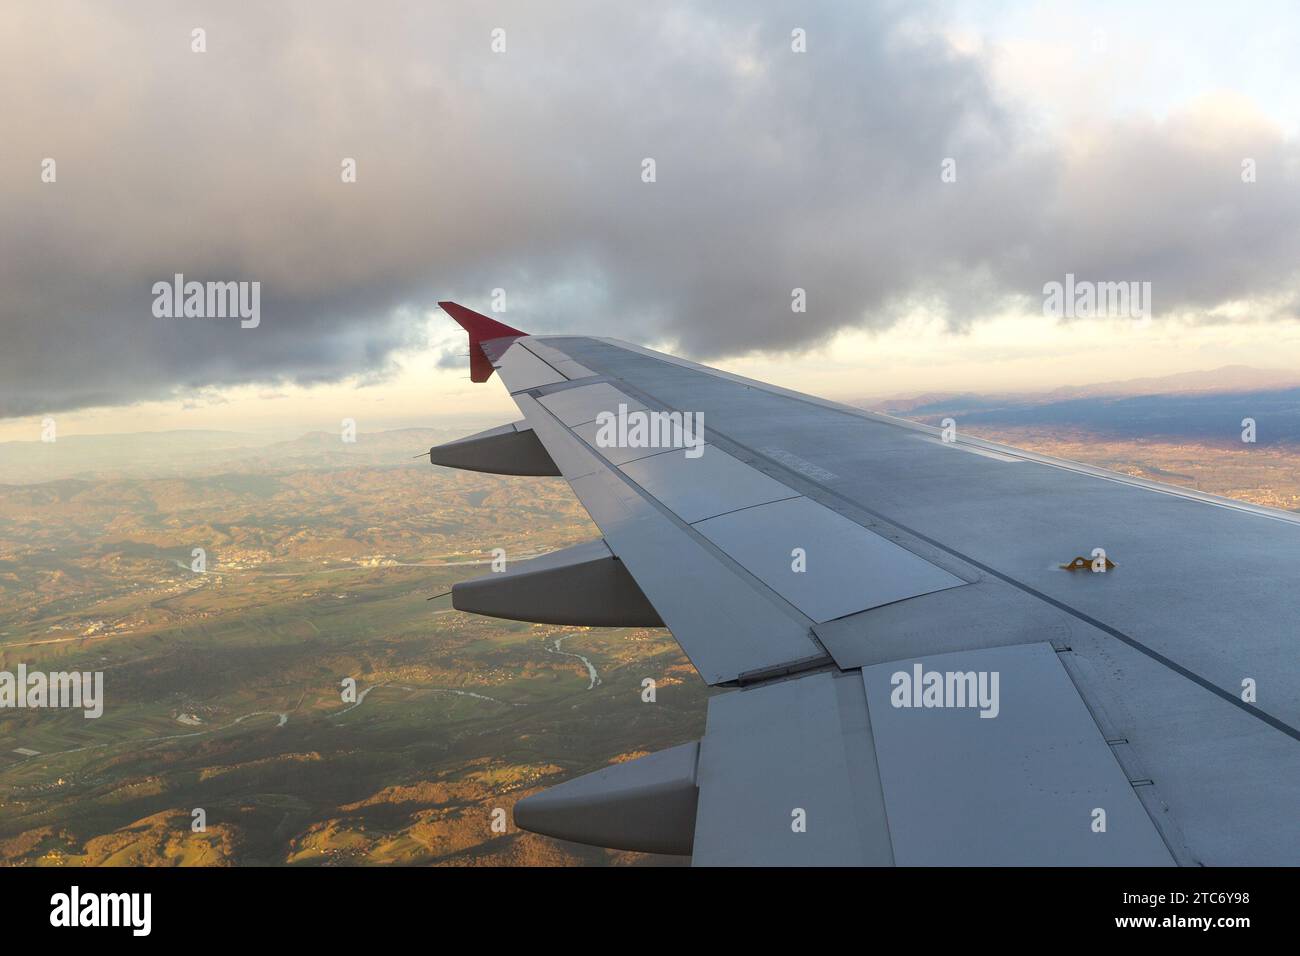 Ala de avión durante el vuelo Foto de stock